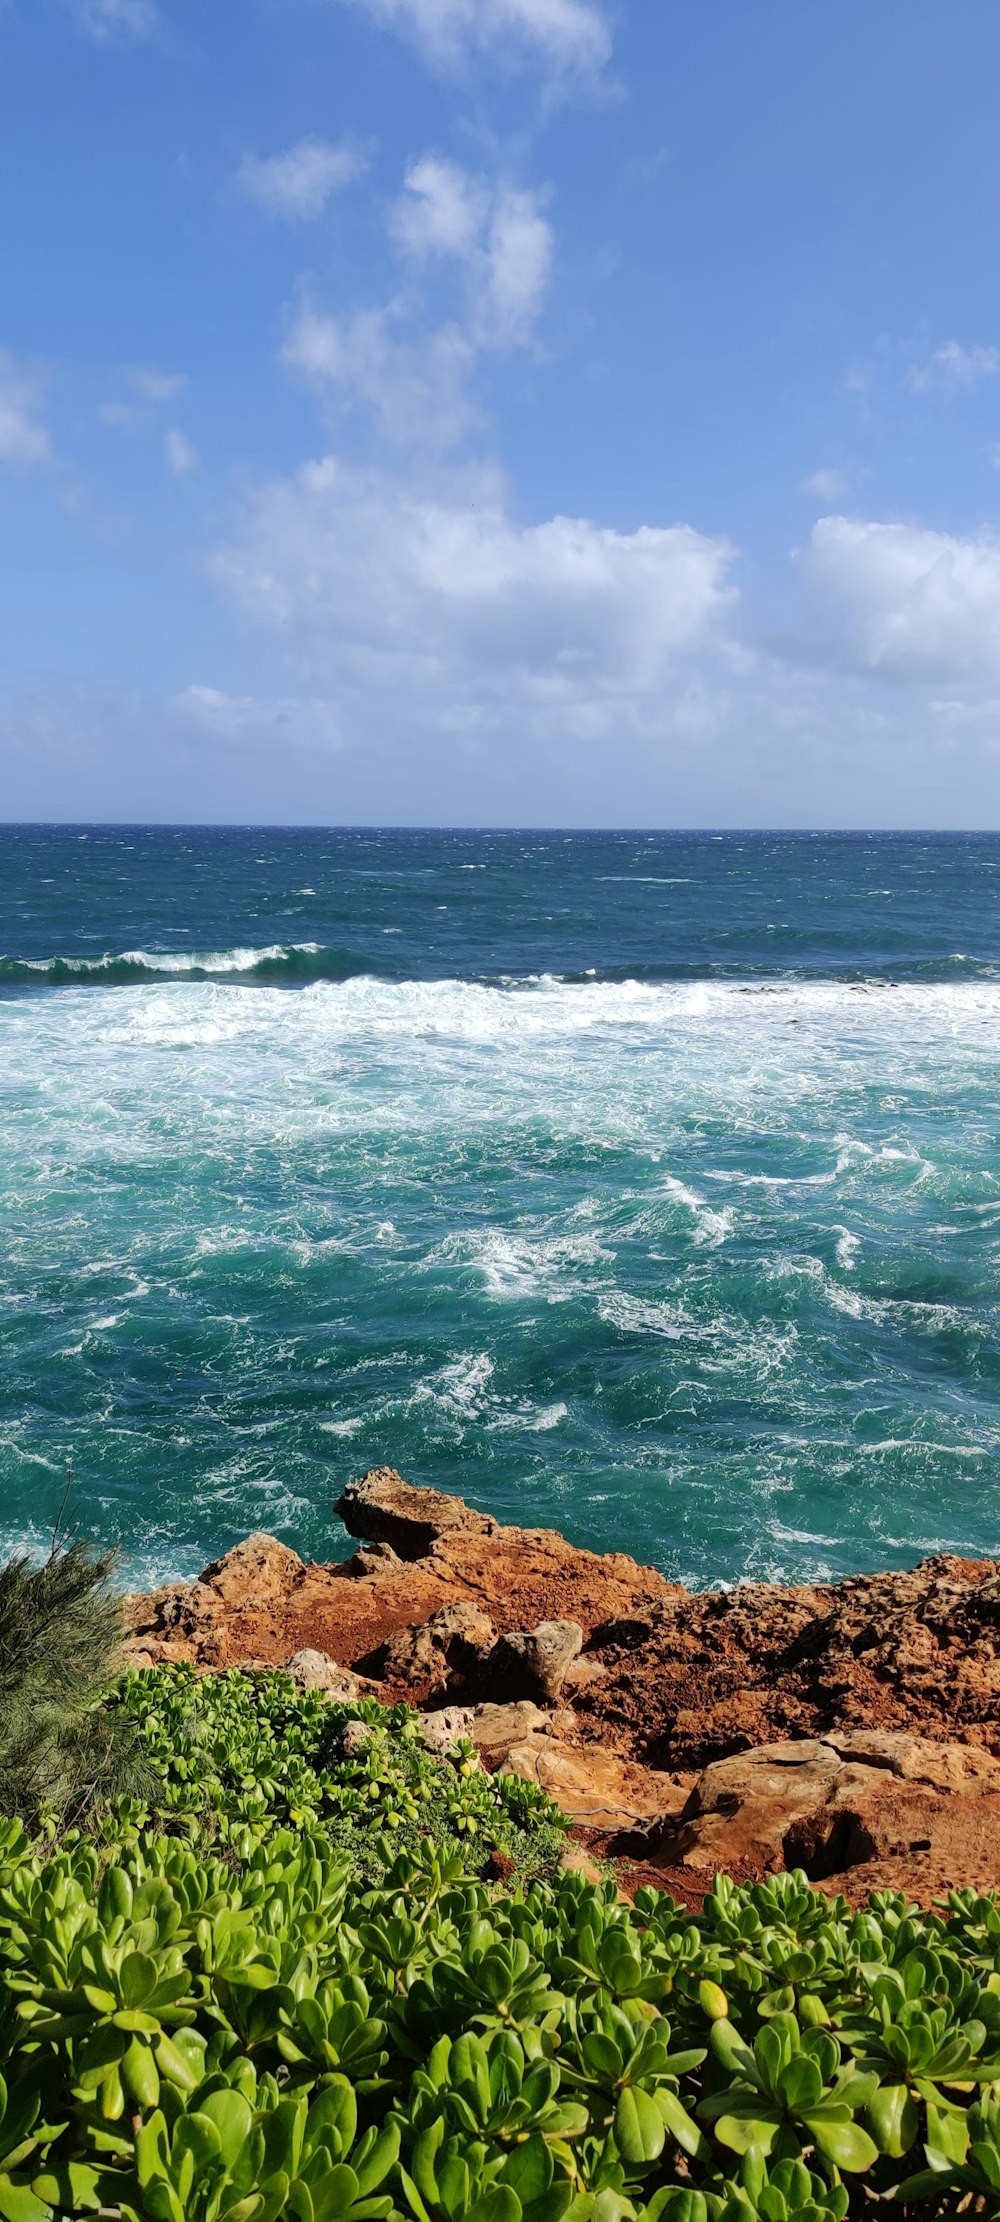 ondas do oceano batendo na costa rochosa marrom durante o dia